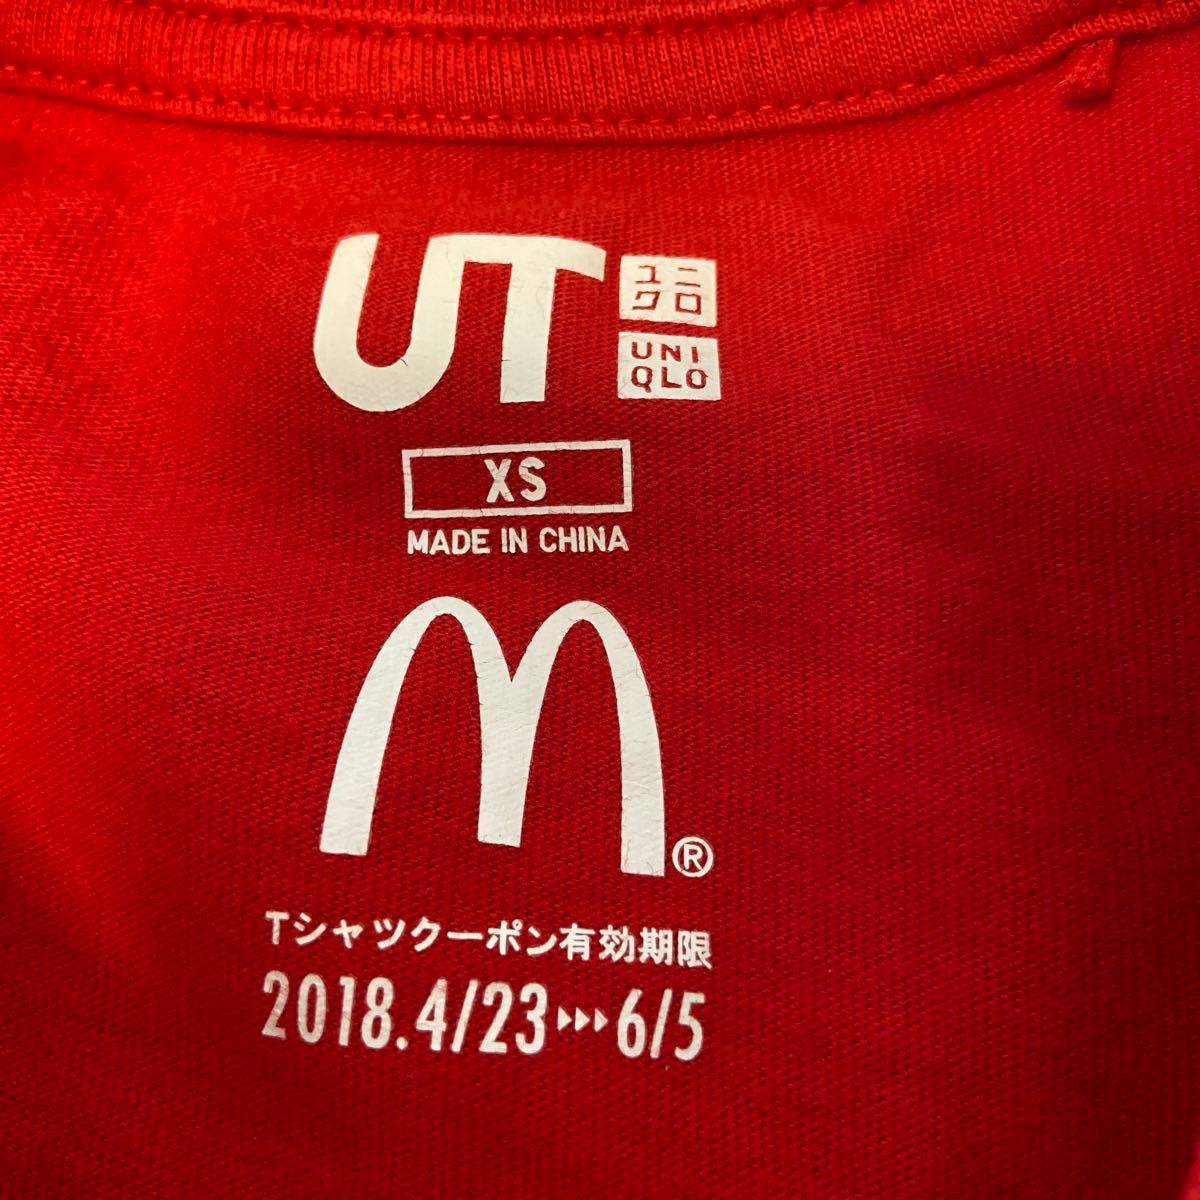 【USED】ユニクロ UNIQLO 半袖Tシャツ Tシャツ ロゴTシャツ XS 子供服 160 No.113 マック マクドナルド